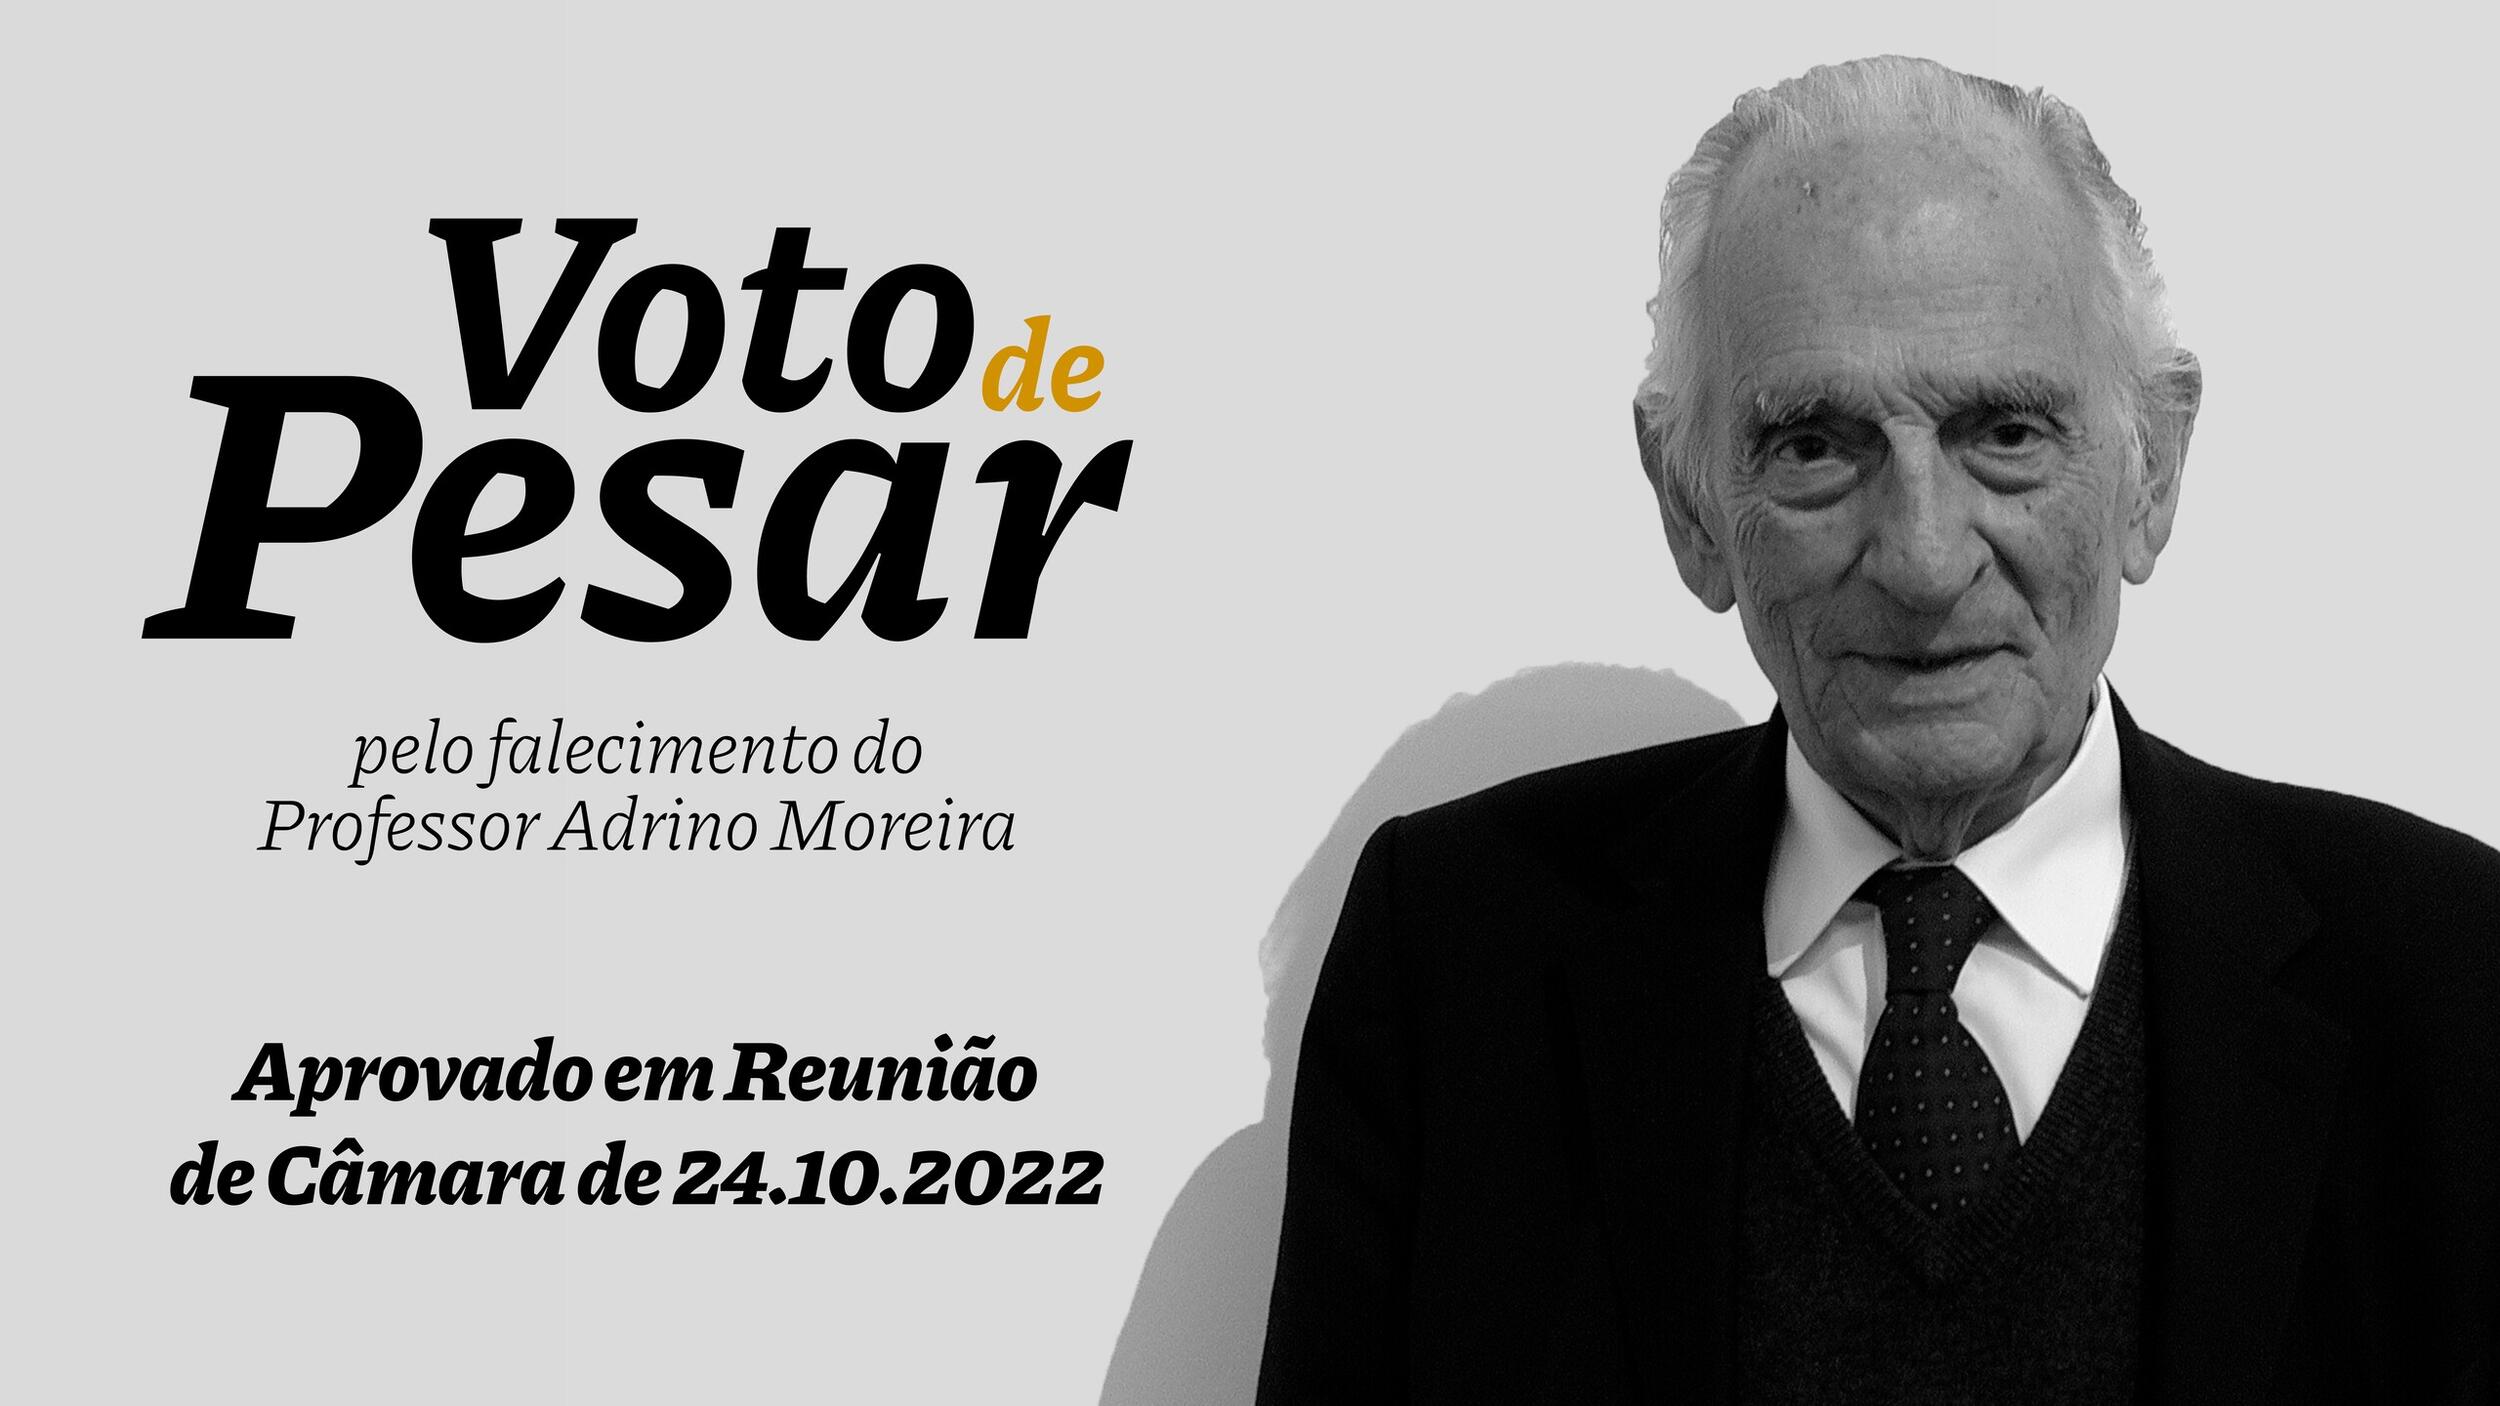 Voto de Pesar pelo falecimento do Professor Adriano Moreira